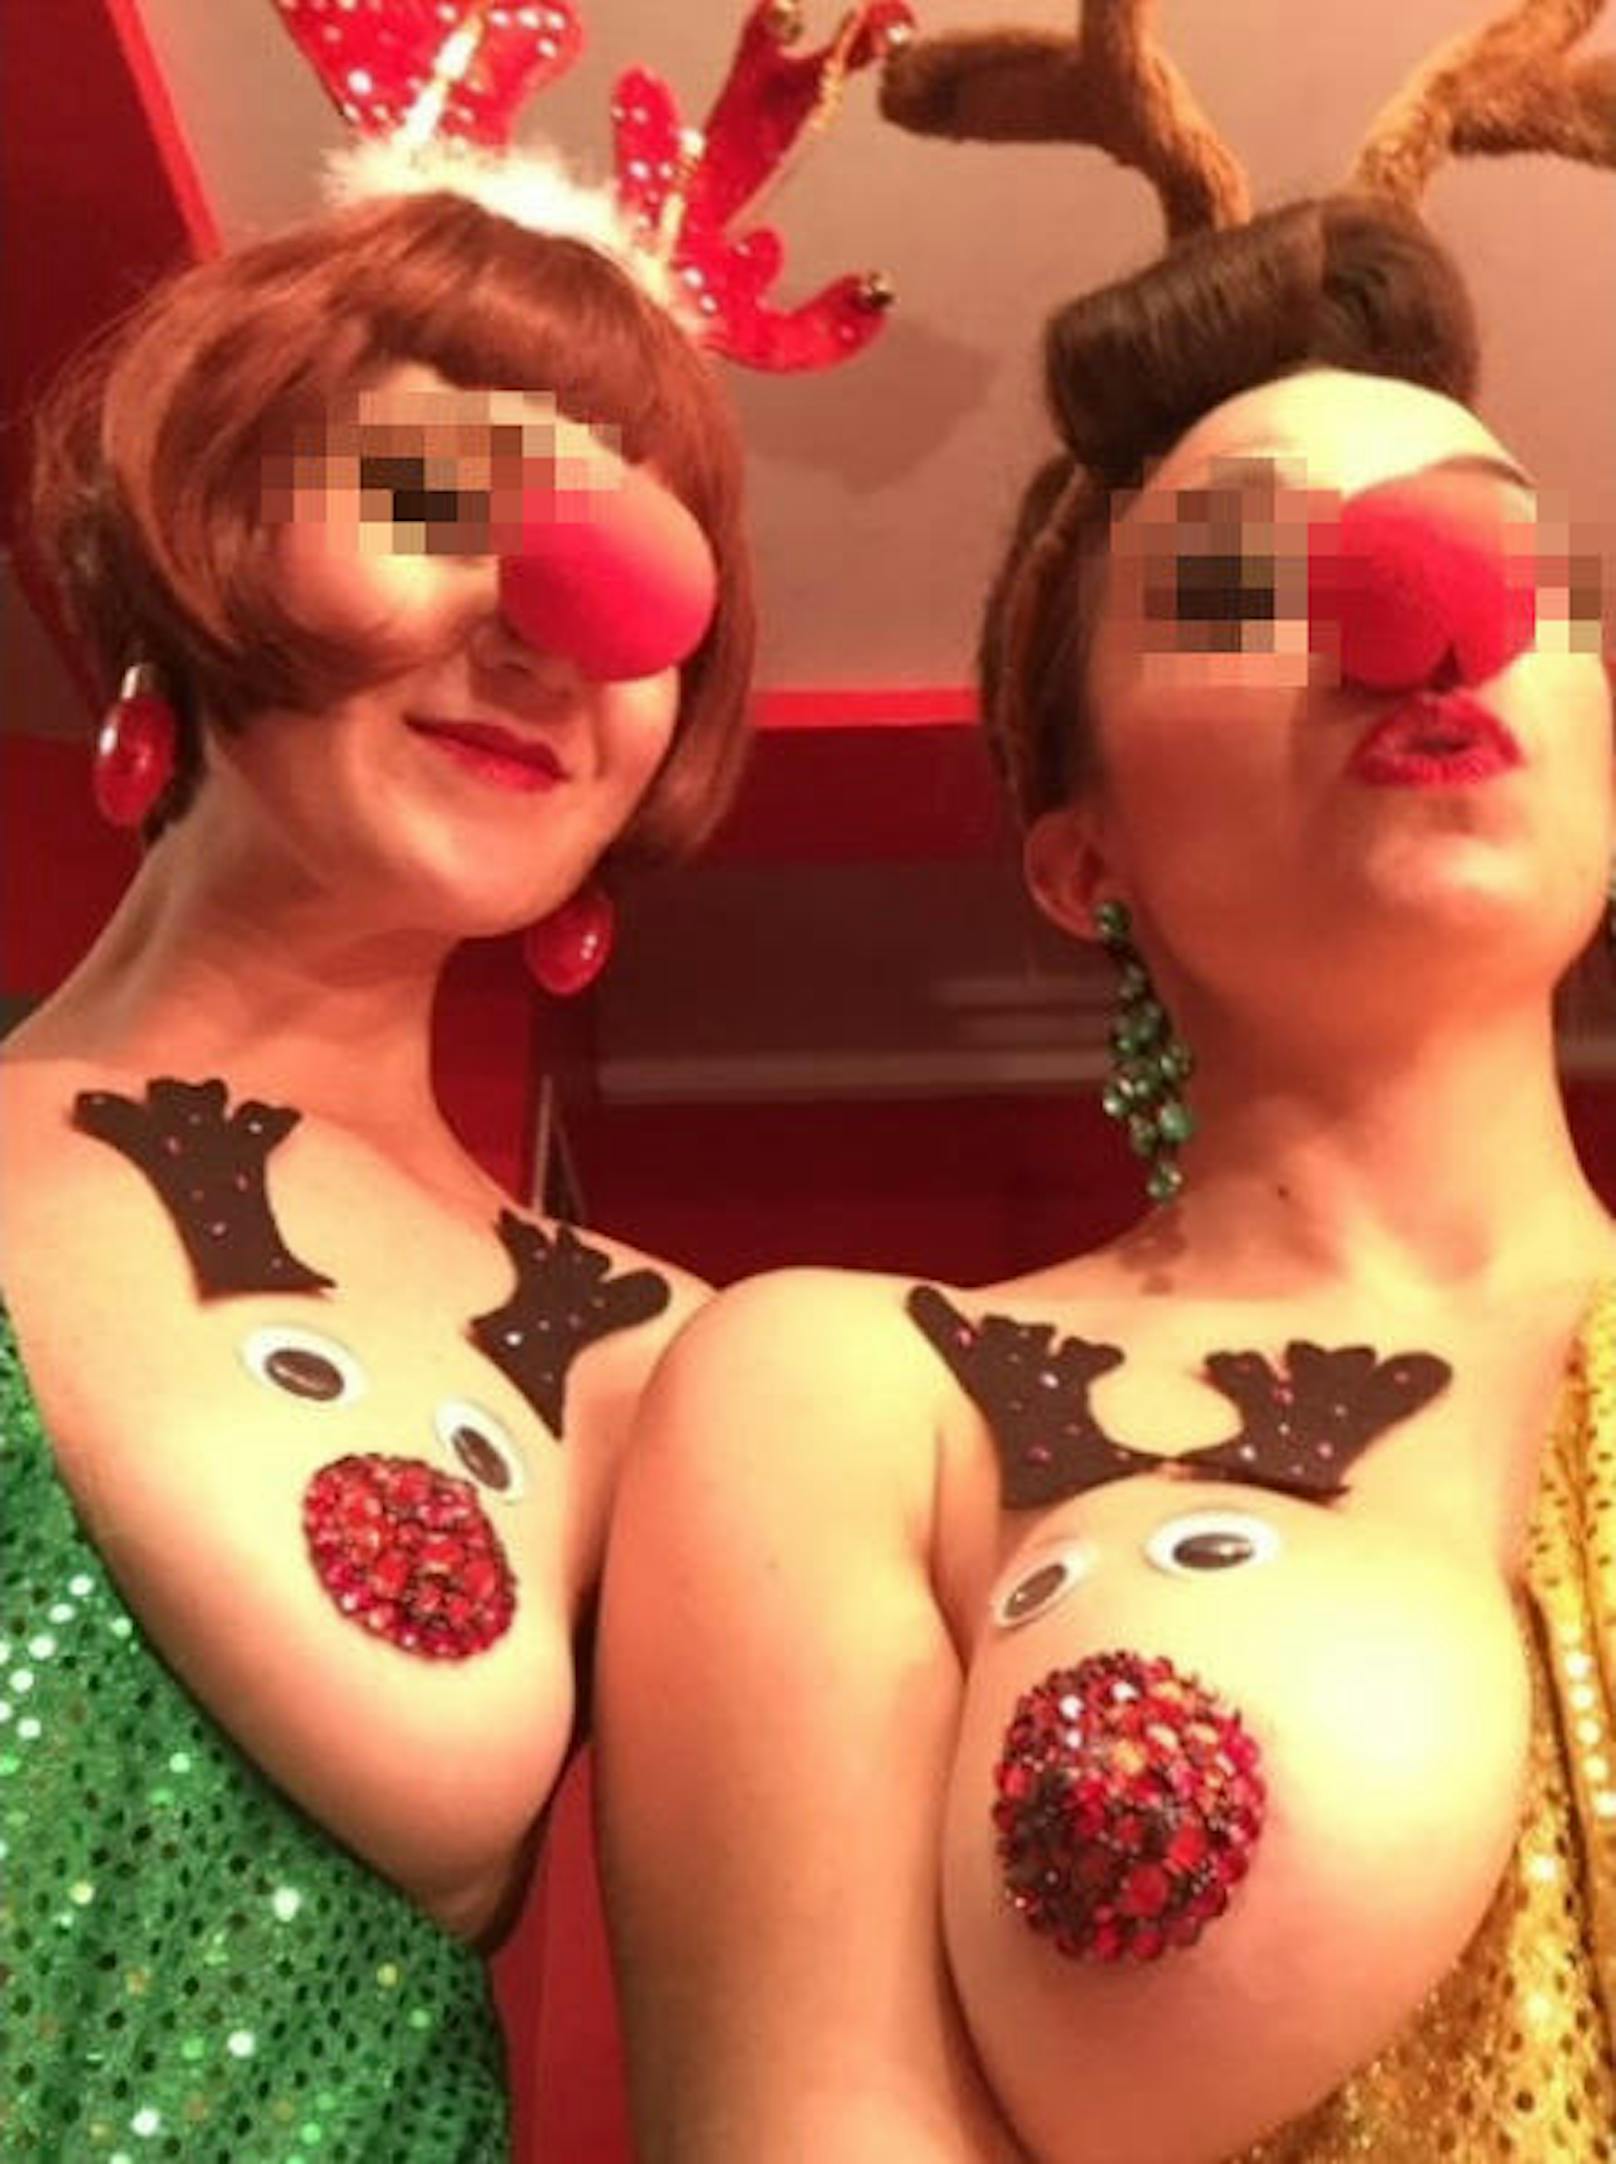 Bis Weihnachten geht es nicht mehr lange, und schon jetzt erstrahlt die Welt im Glitzern der Dekorationen - draußen in den Städten und Dörfern, aber auch auf Instagram. Für die Fotoplattform dekorieren Nutzer jetzt auch ihre Brüste.